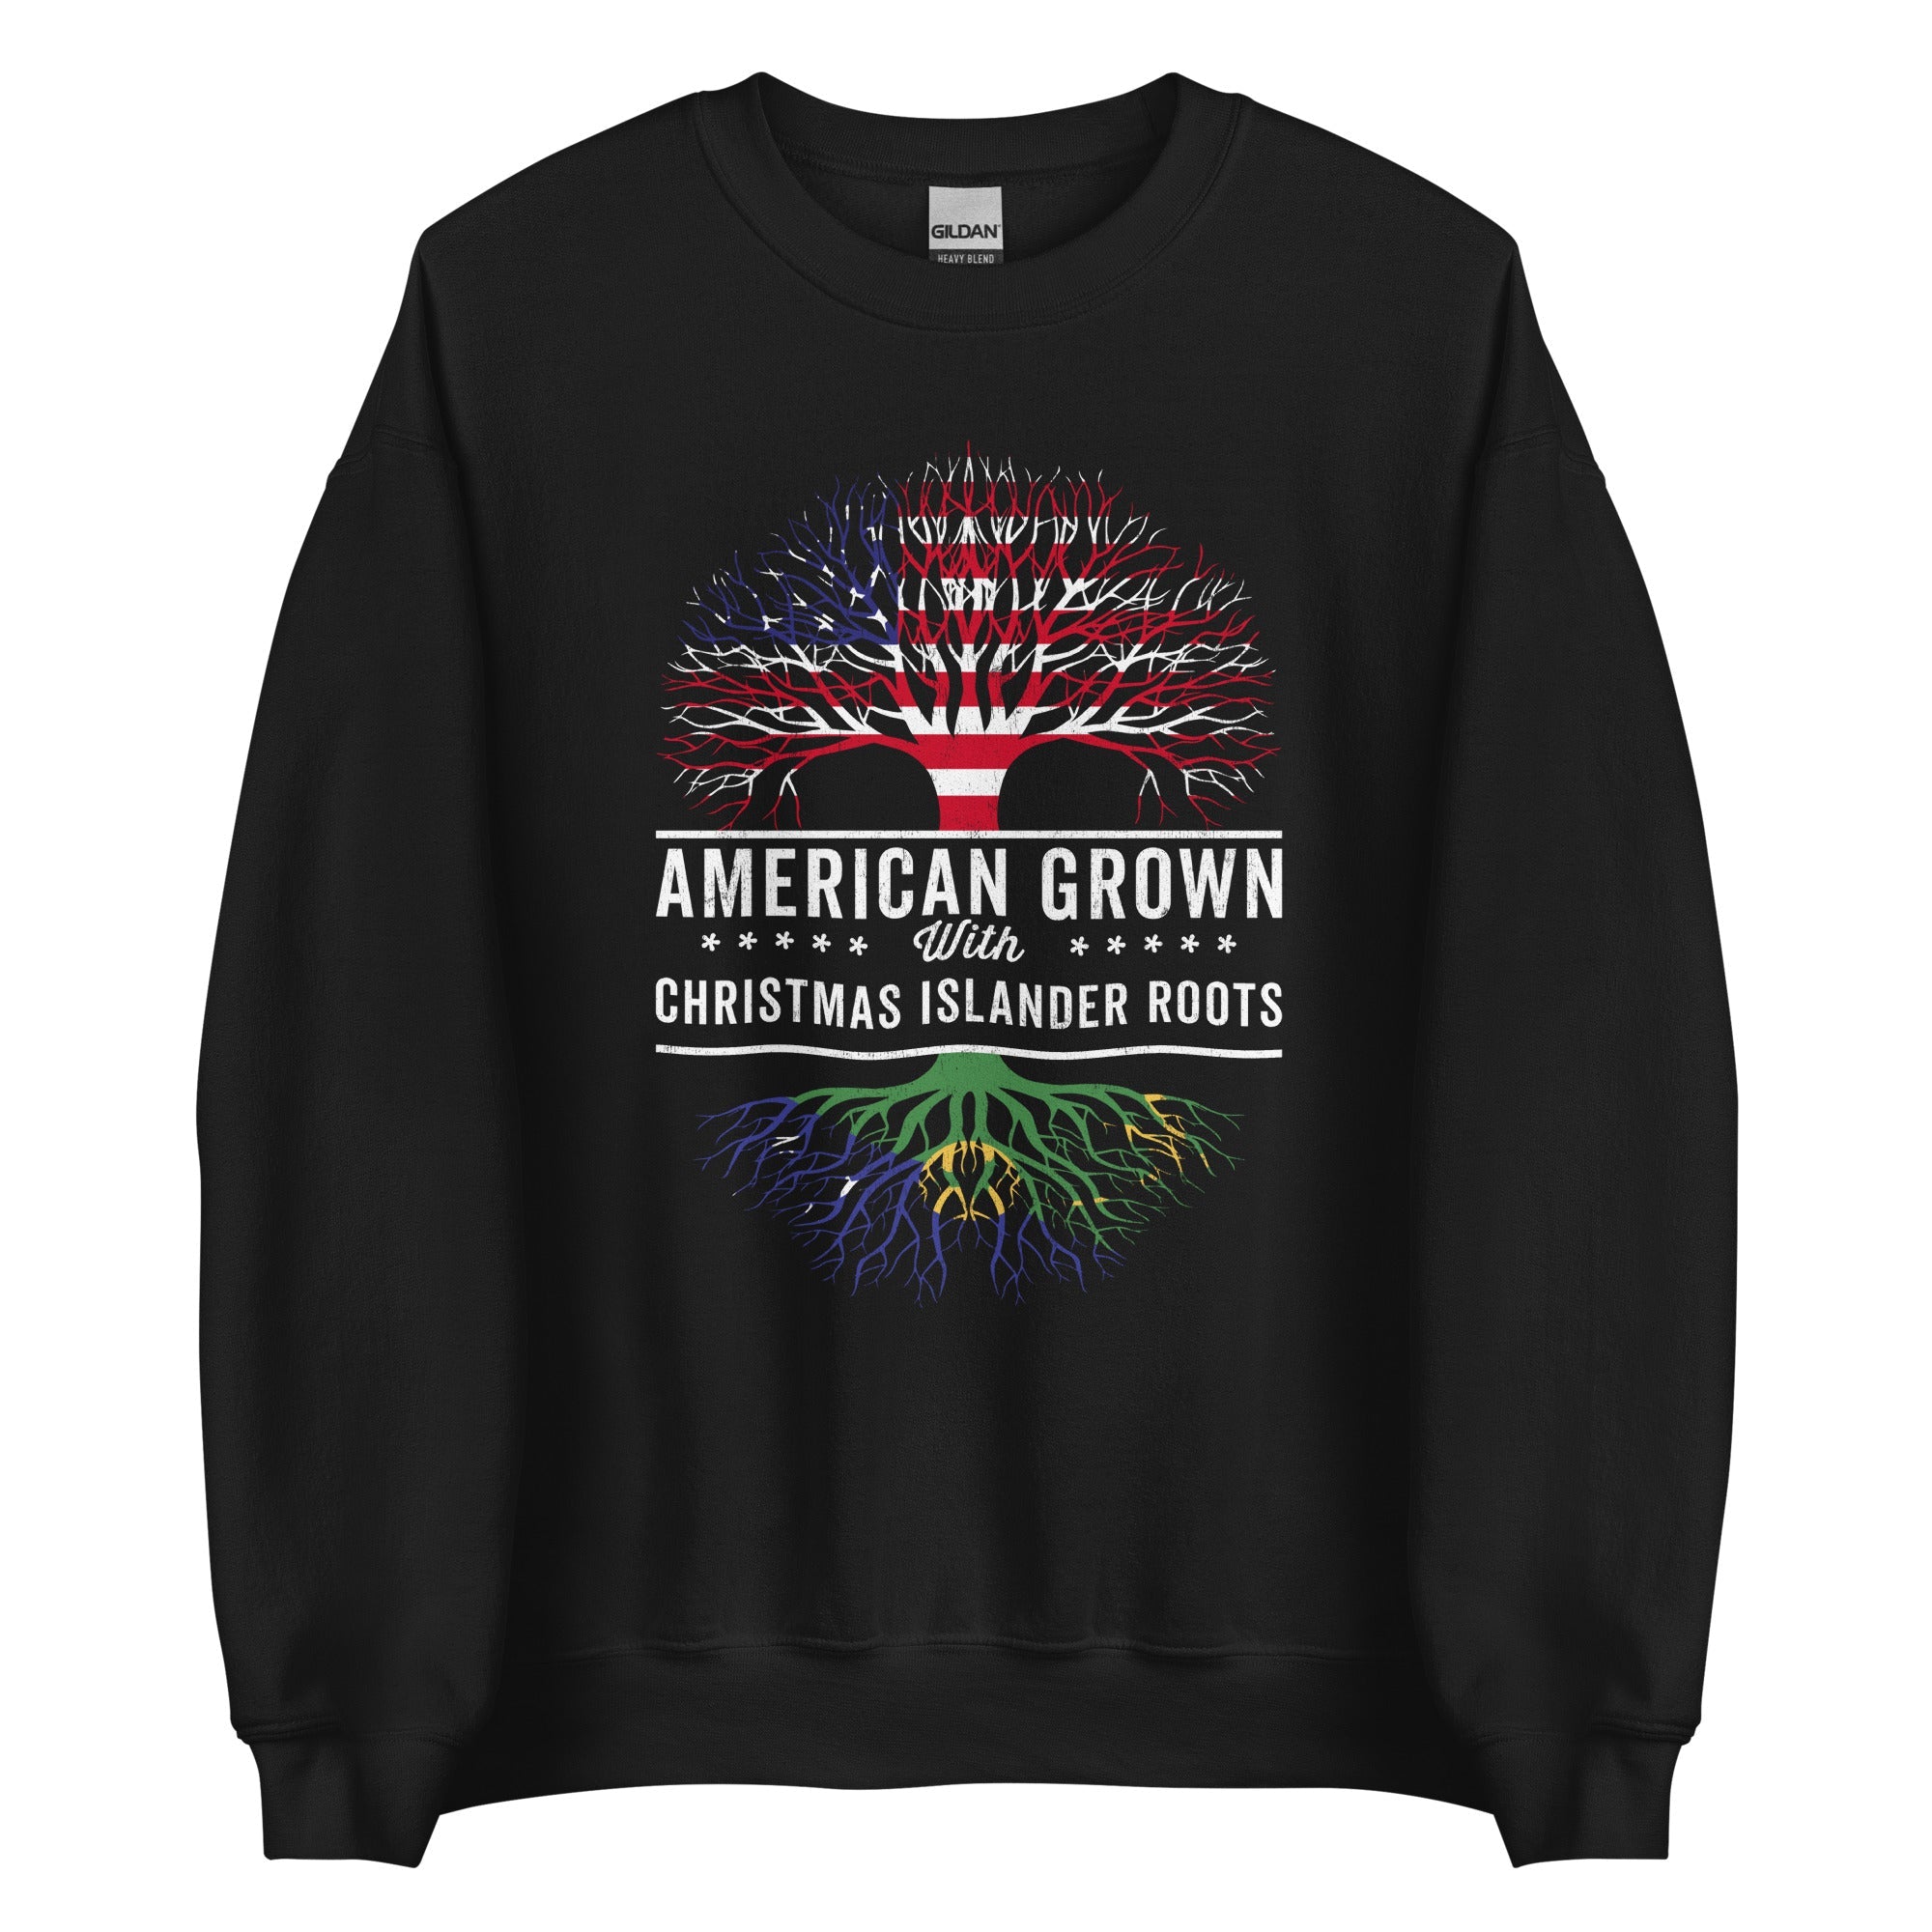 American Grown Christmas Islander Roots Sweatshirt